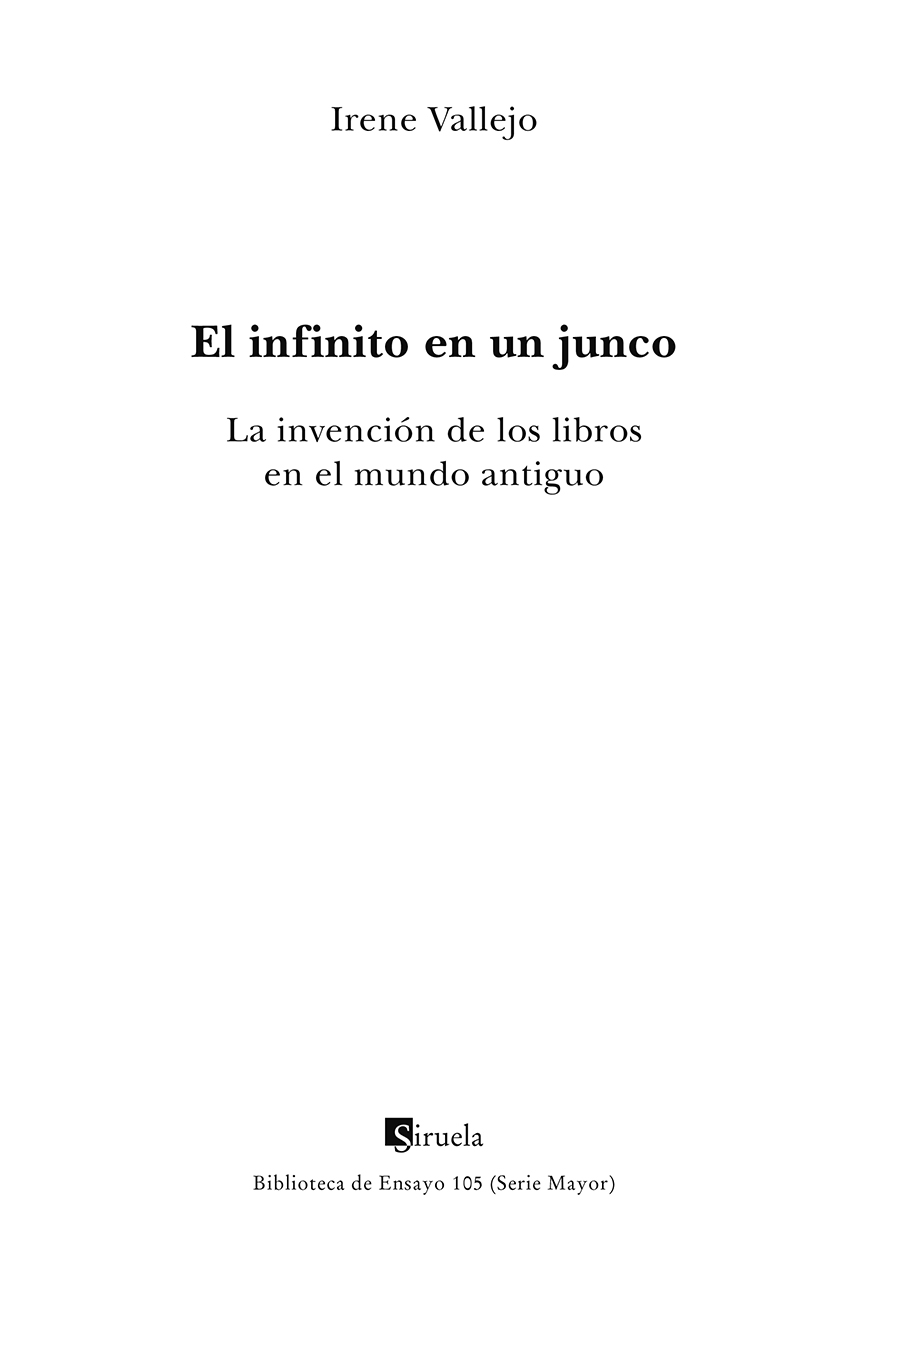 Portadilla: El infinito en un junco. Irene Vallejo